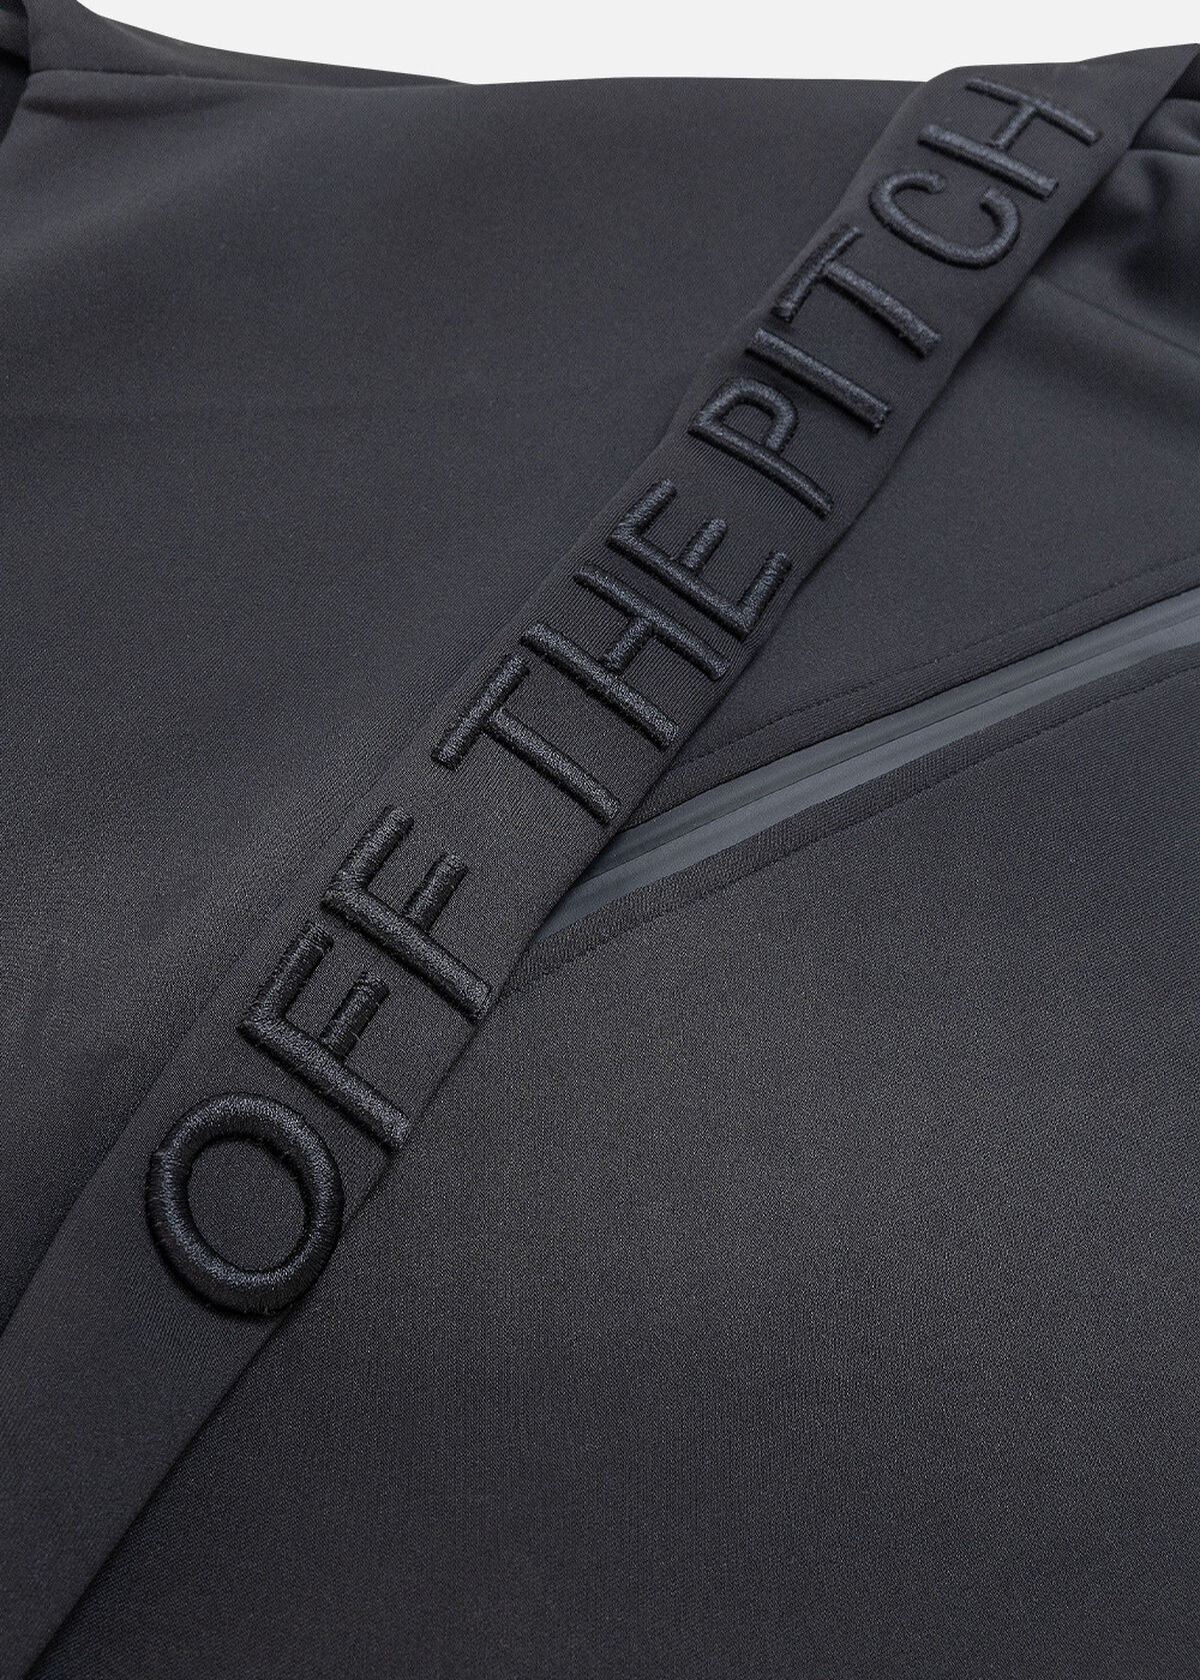 Leisure Track Jacket - 95% Polyester / 5% Elastane, Black, hi-res